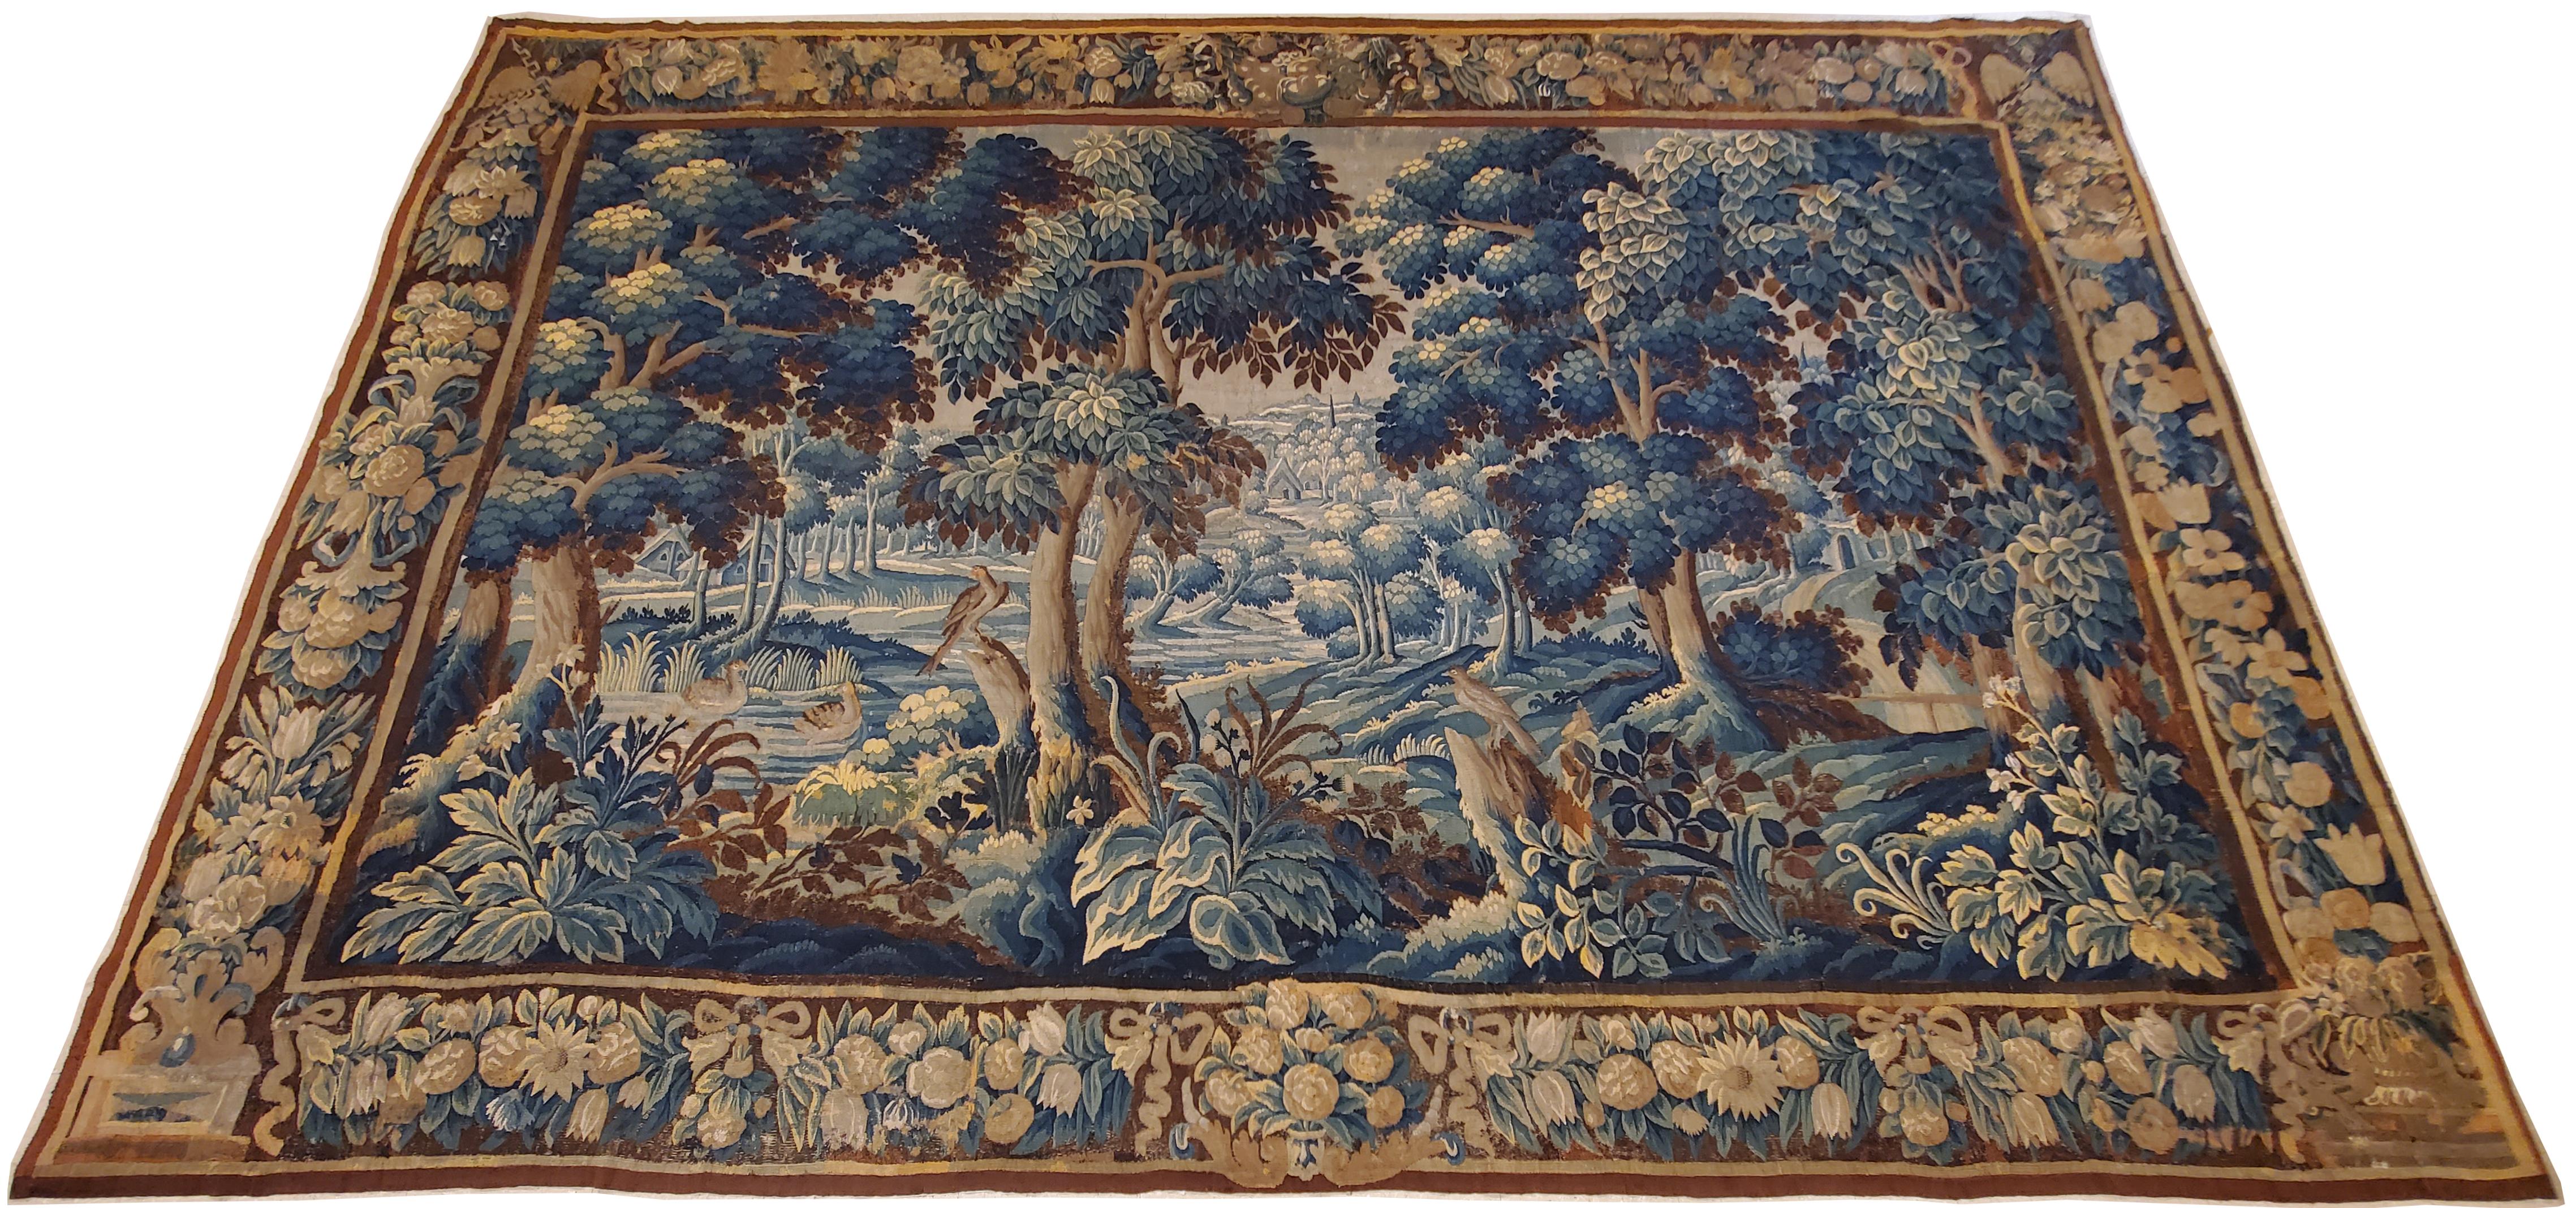 Großer flämischer Wandteppich aus dem 17. Jahrhundert mit einer ruhigen Szene in einer Waldlandschaft, mit stattlichen Bäumen rechts und links im Vordergrund, unter deren Schatten ein exotischer Vogel im Gras ruht, und weiteren Bäumen in einigen